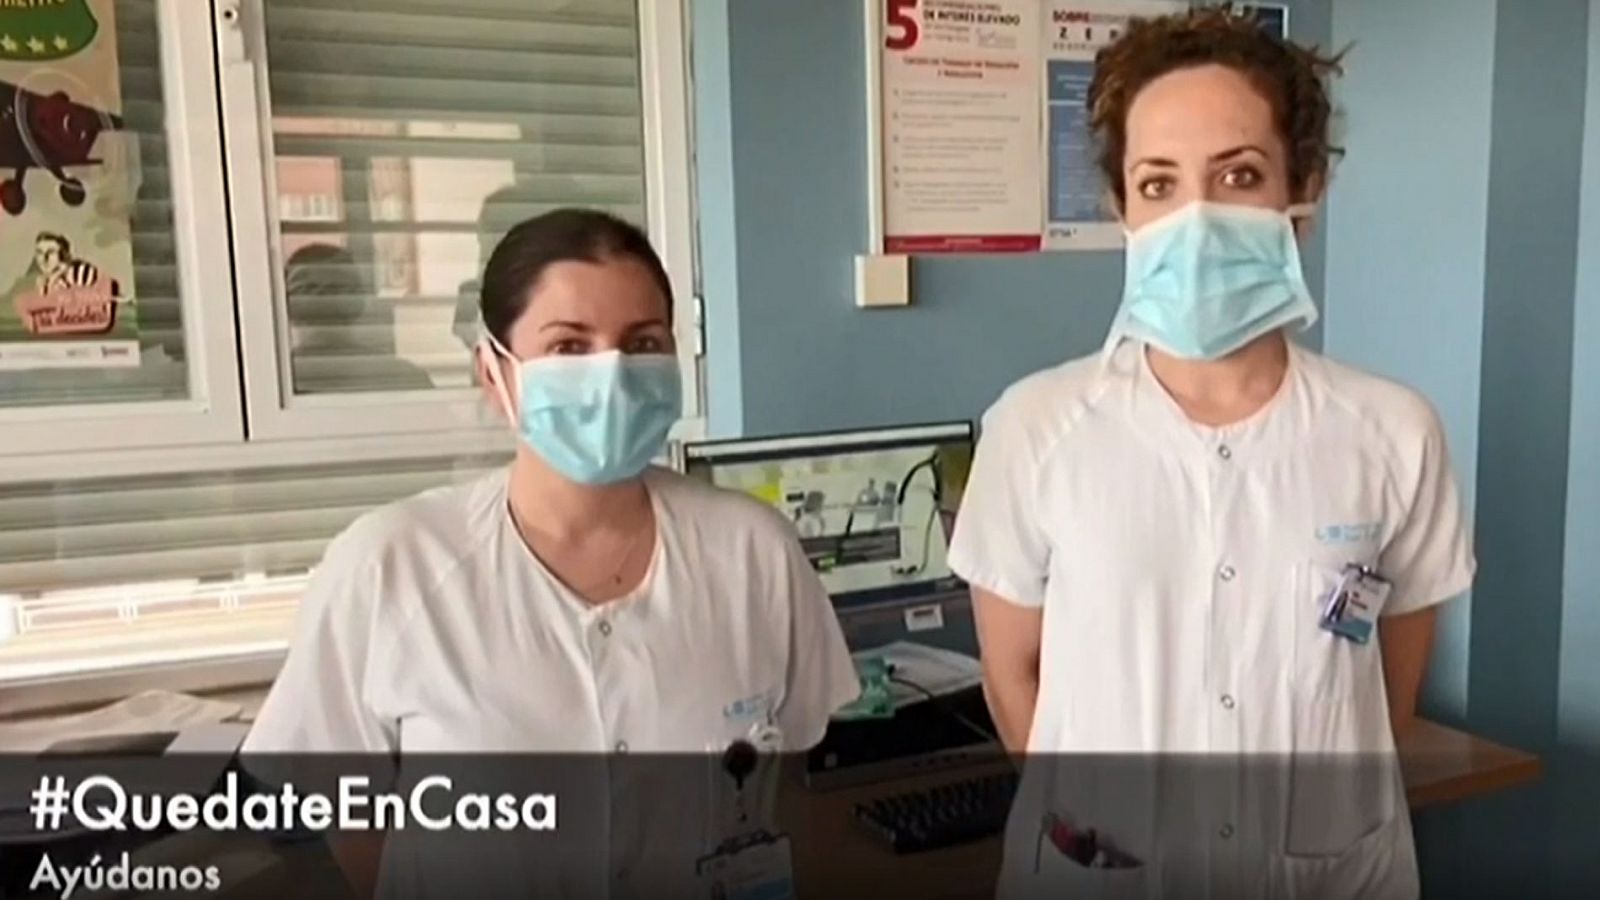 Los profesionales sanitarios de la Comunidad de Madrid lanzan el mensaje #QuédateEnCasa - RTVE.es